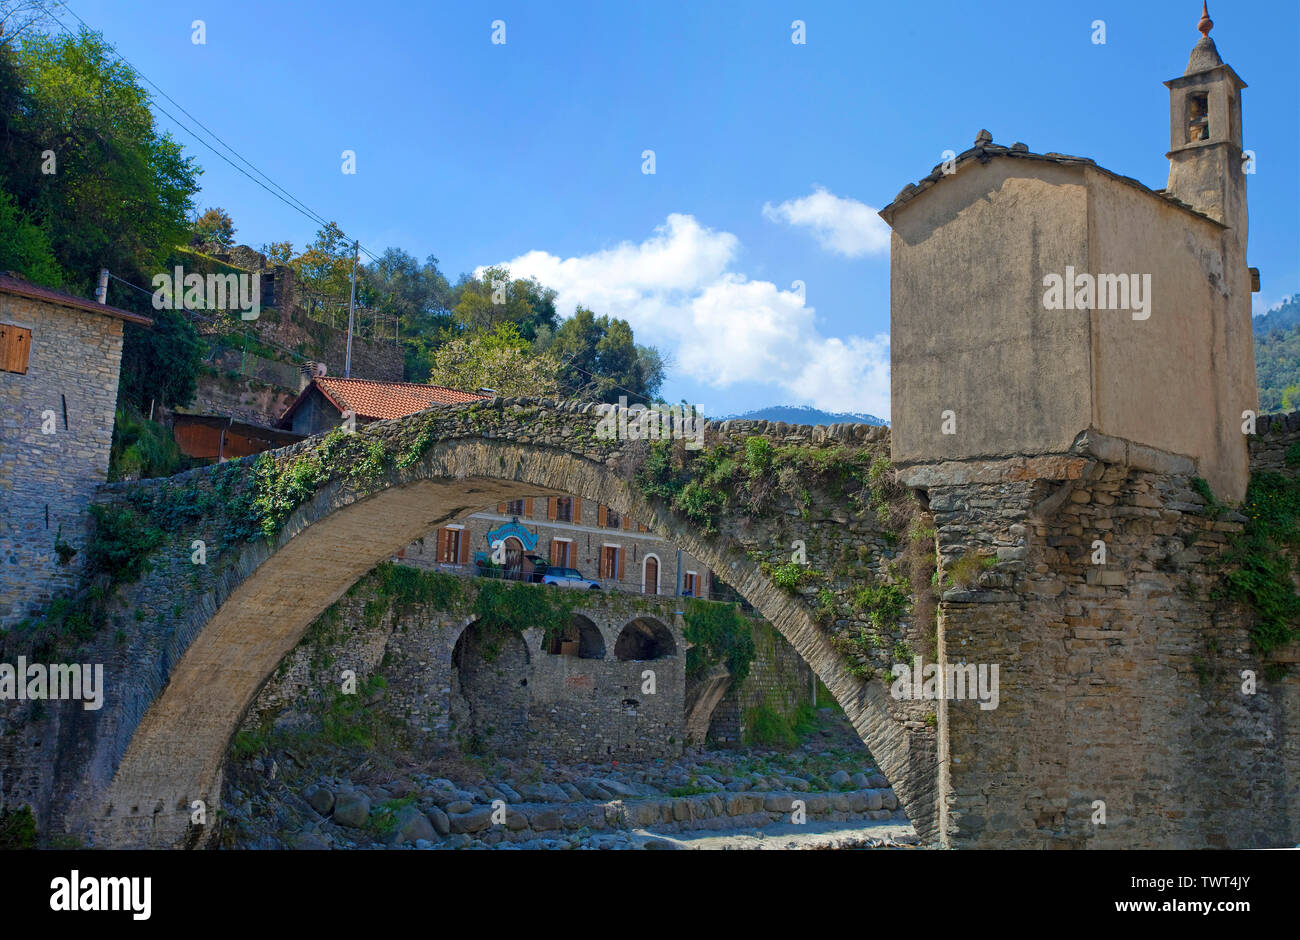 Vieux pont médiéval en pierre avec pont chapelle de Badalucco, village à province Imperia, Riviera di Ponente, Ligurie, Italie Banque D'Images